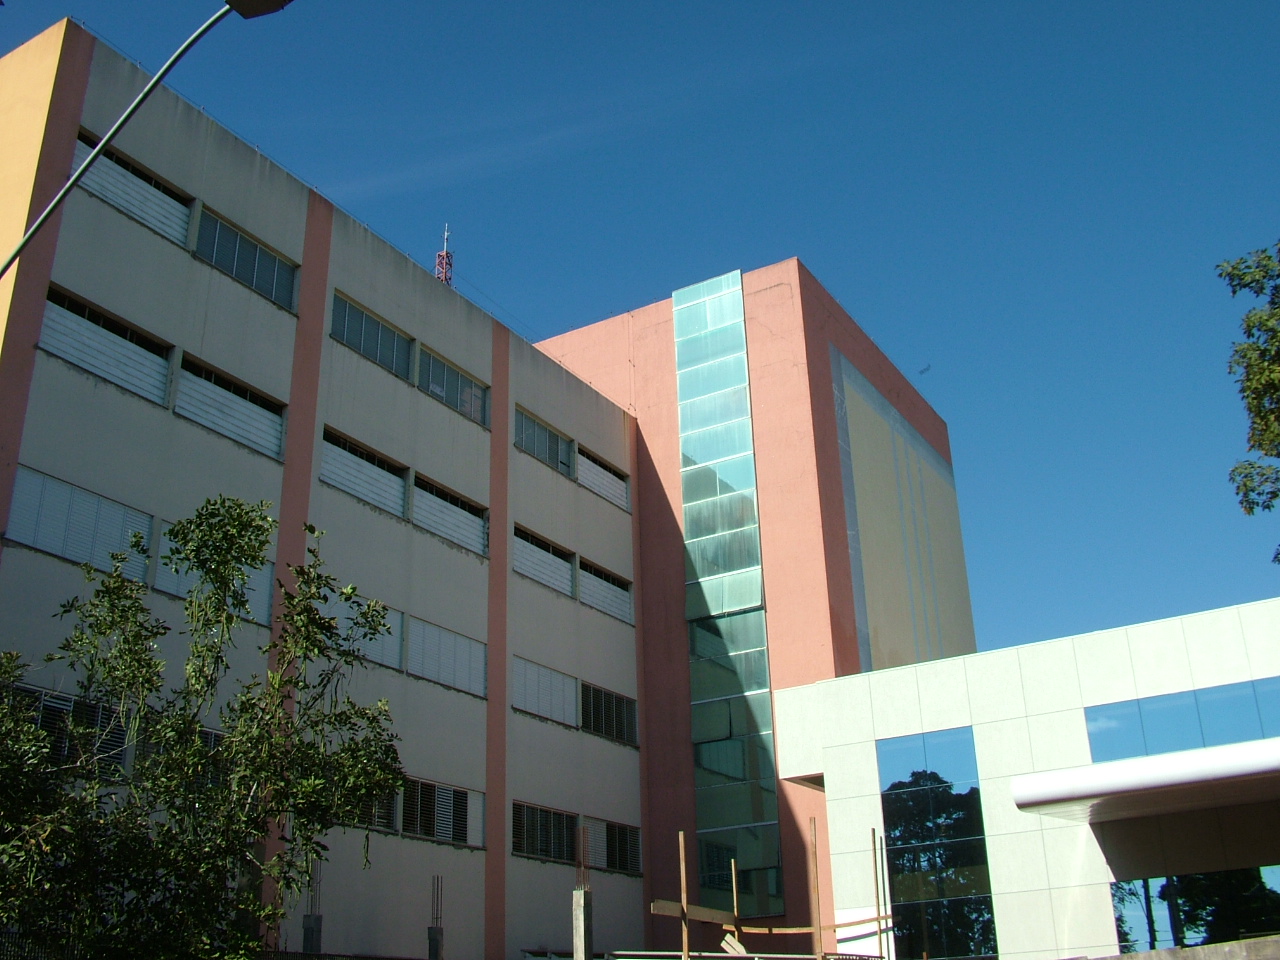 Fotografia colorida da fachada de um prédio. 